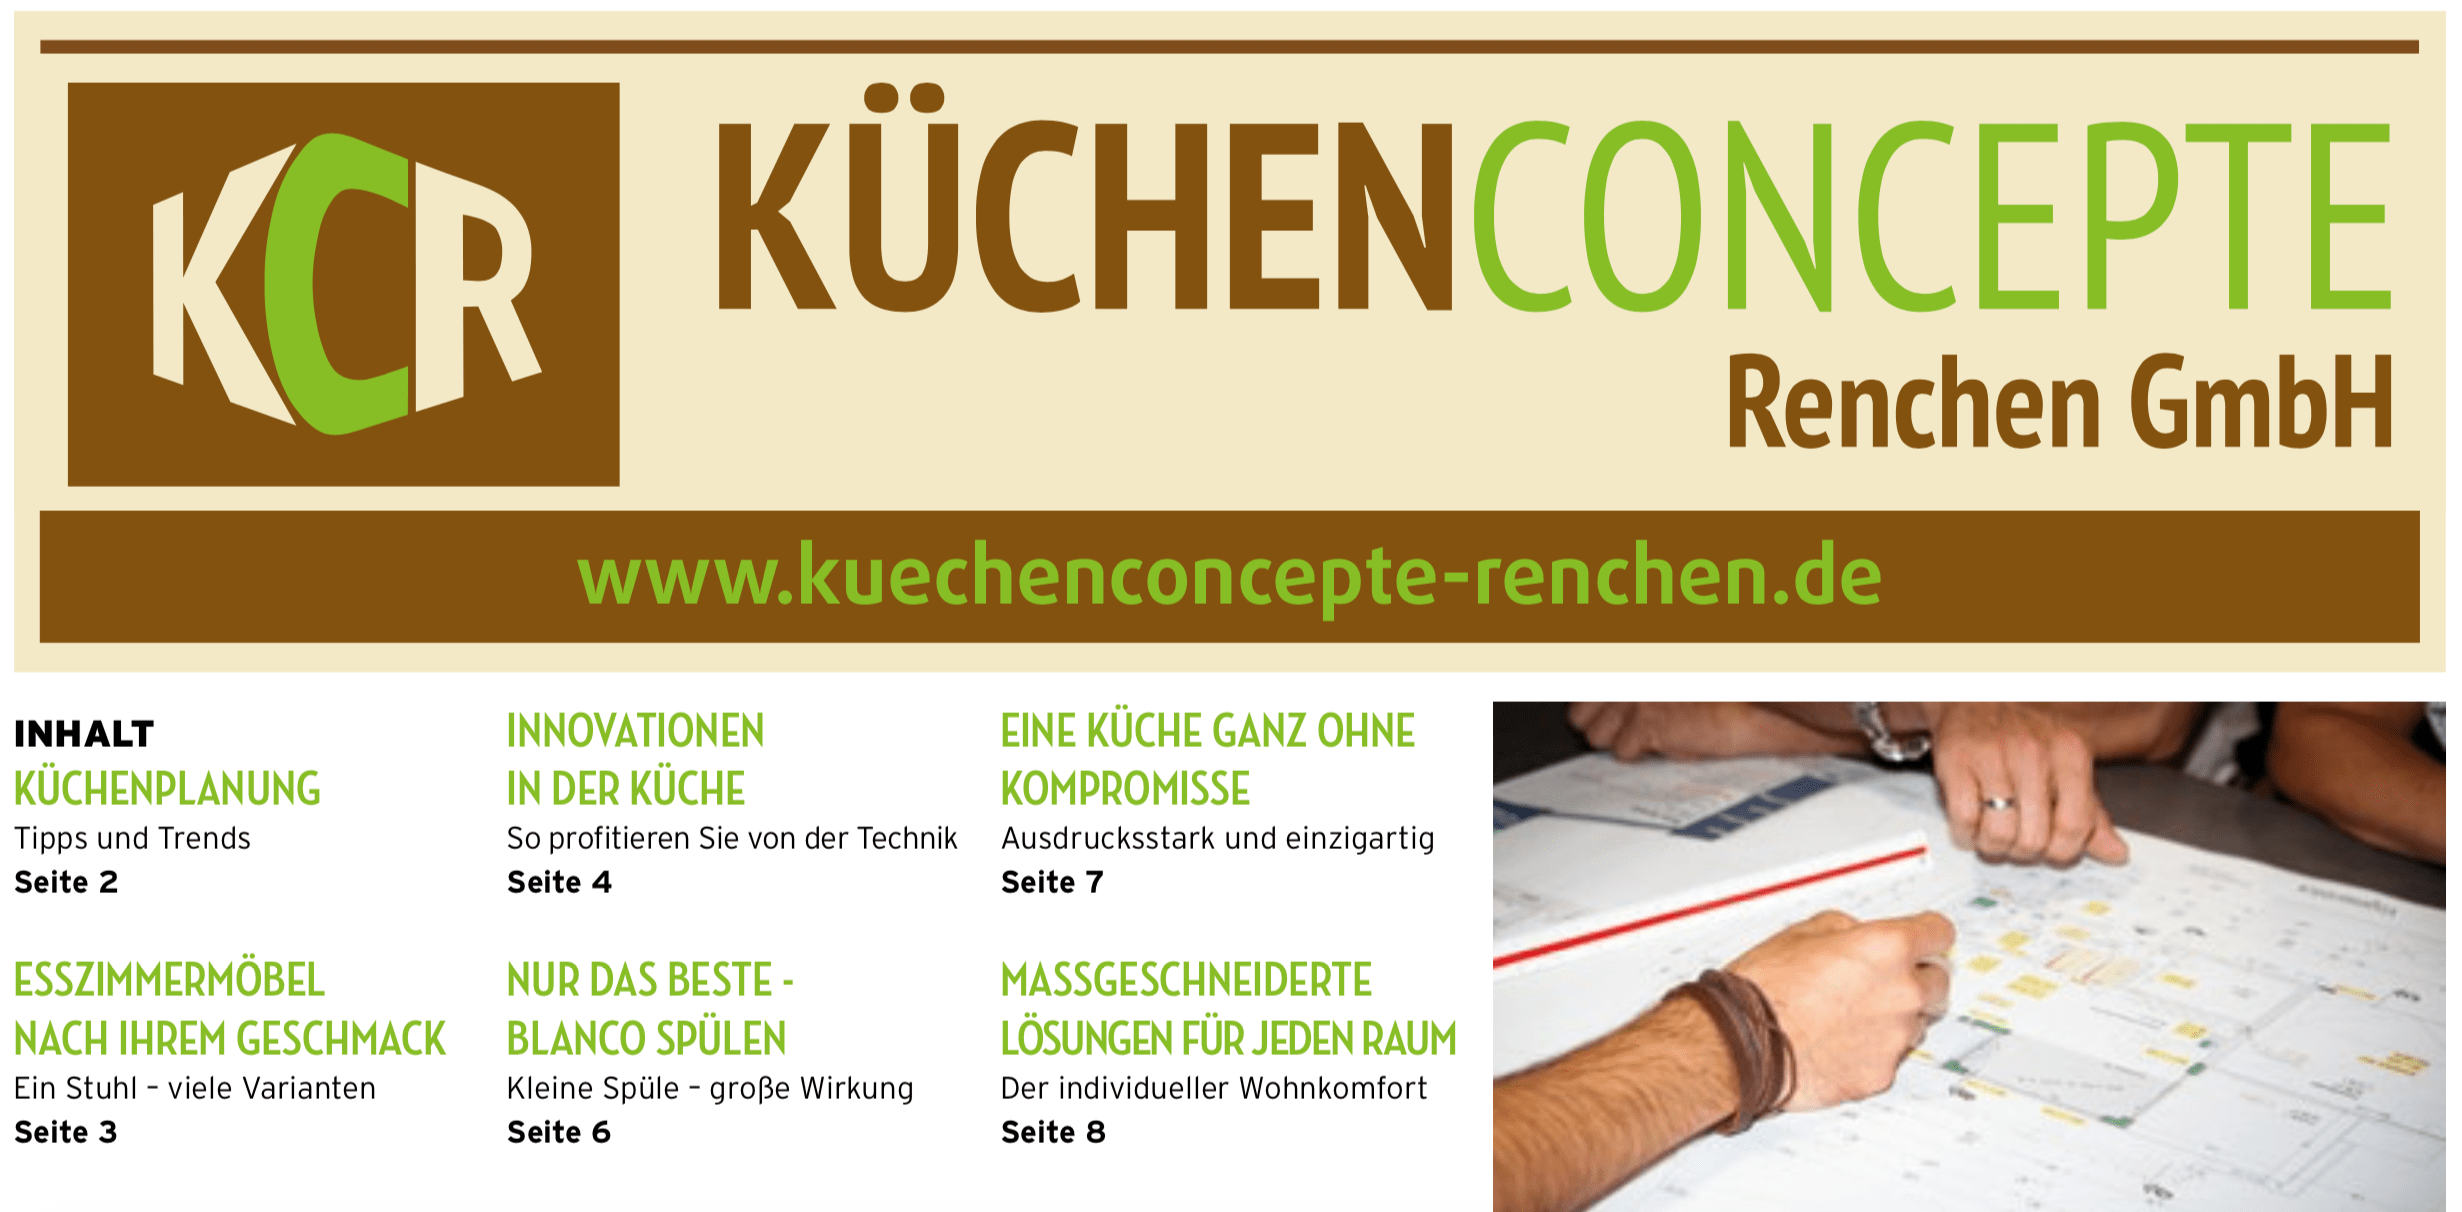 dominic, Autor bei KCR - Küchenconcepte Renchen GmbH